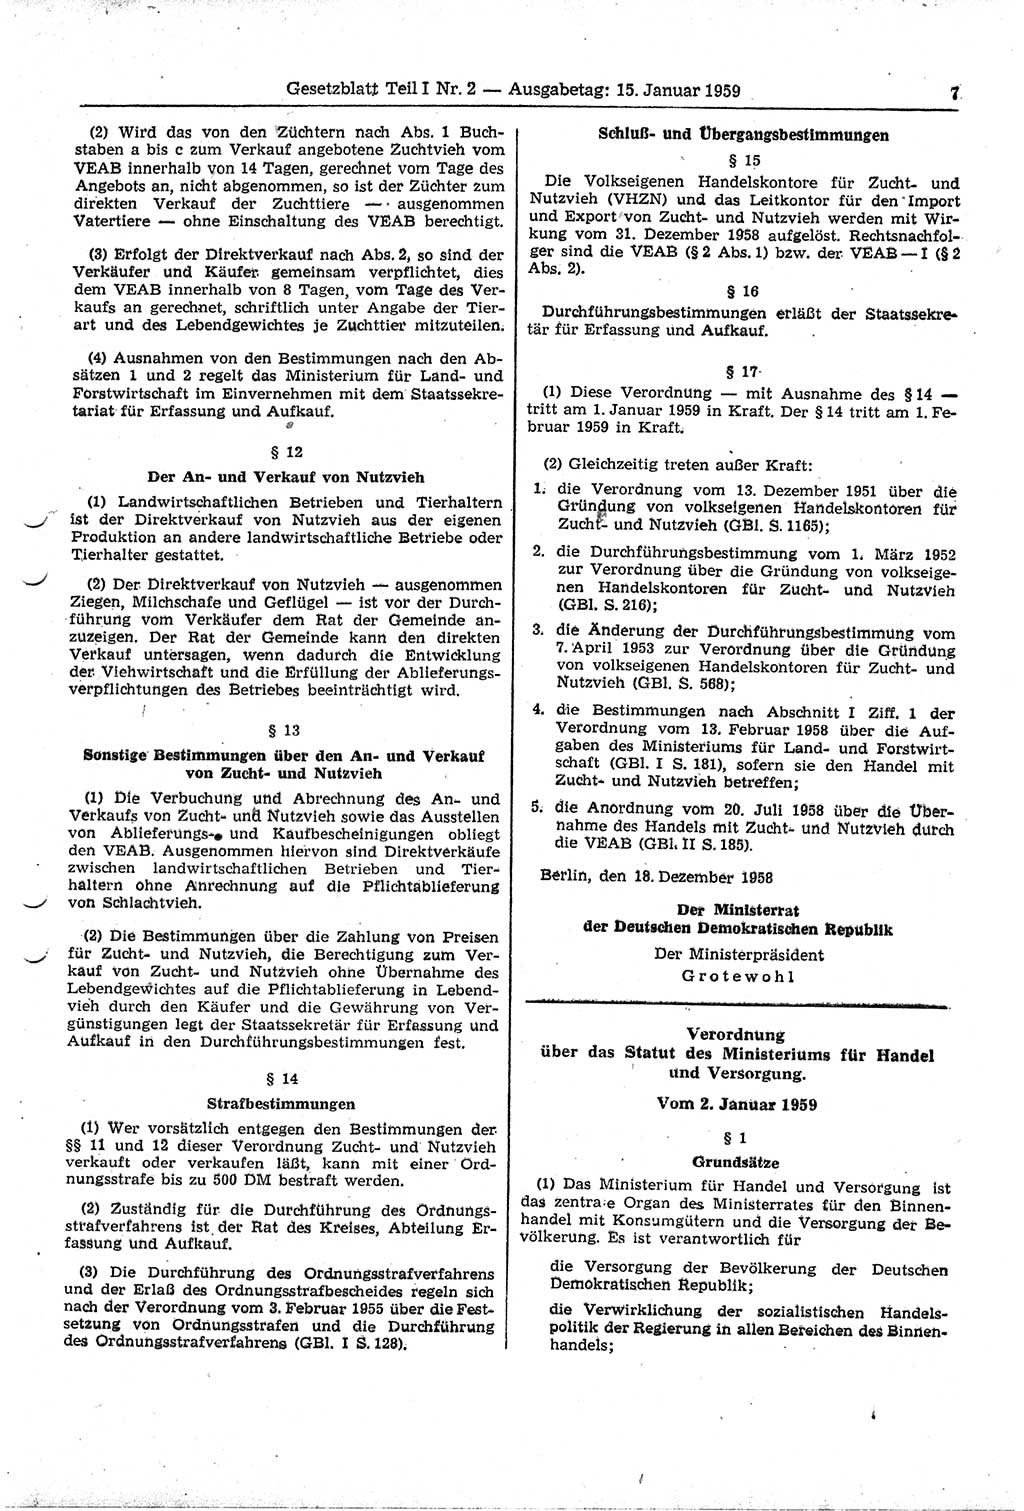 Gesetzblatt (GBl.) der Deutschen Demokratischen Republik (DDR) Teil Ⅰ 1959, Seite 7 (GBl. DDR Ⅰ 1959, S. 7)